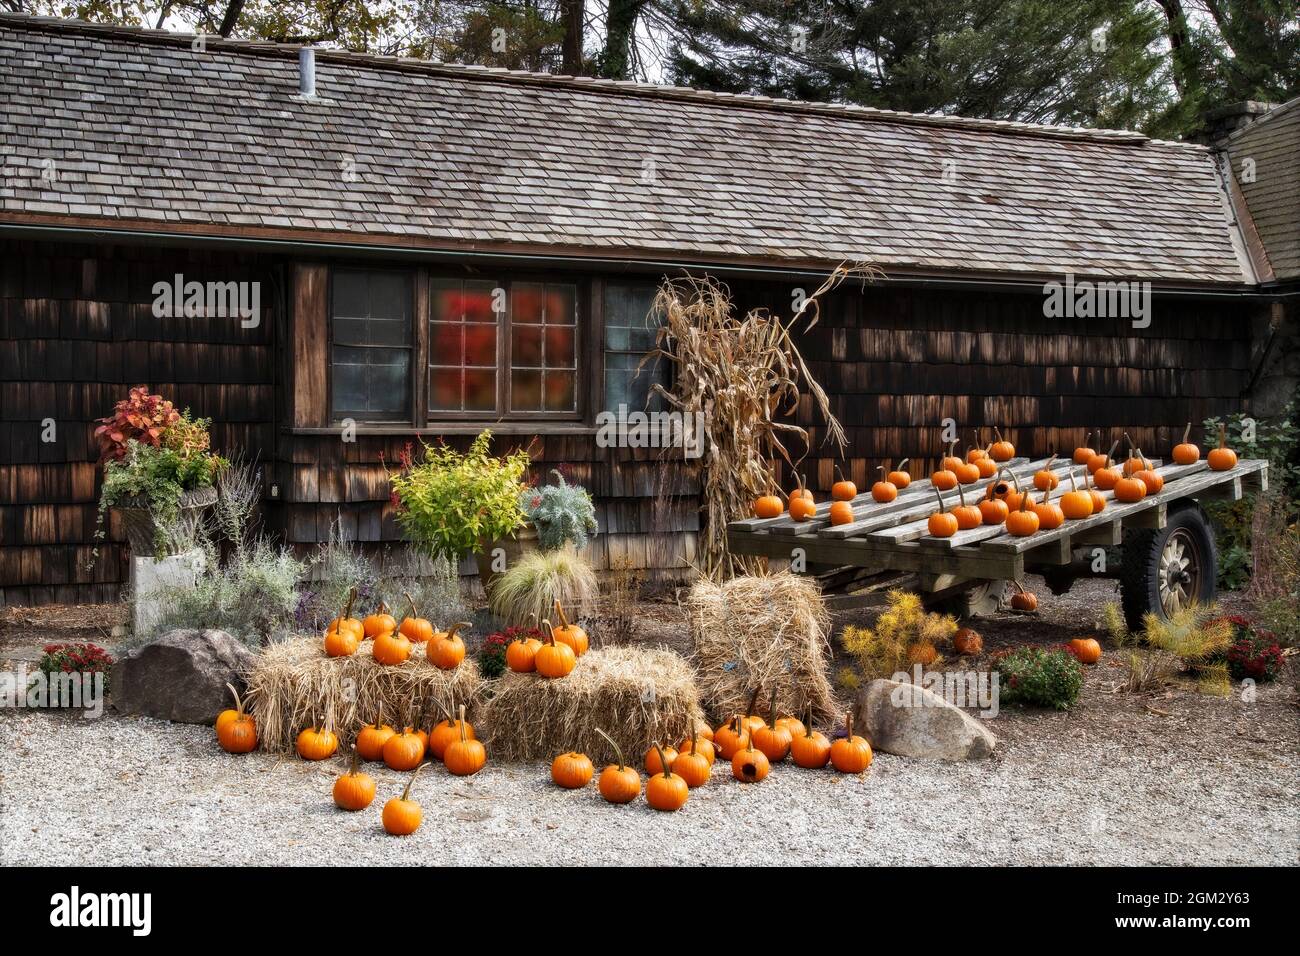 Citrouilles et réflexions d'automne - beaucoup de pumkins ornent le côté d'une maison avec des panneaux de fenêtre reflétant les couleurs de l'automne et des décorations. Également vu Banque D'Images